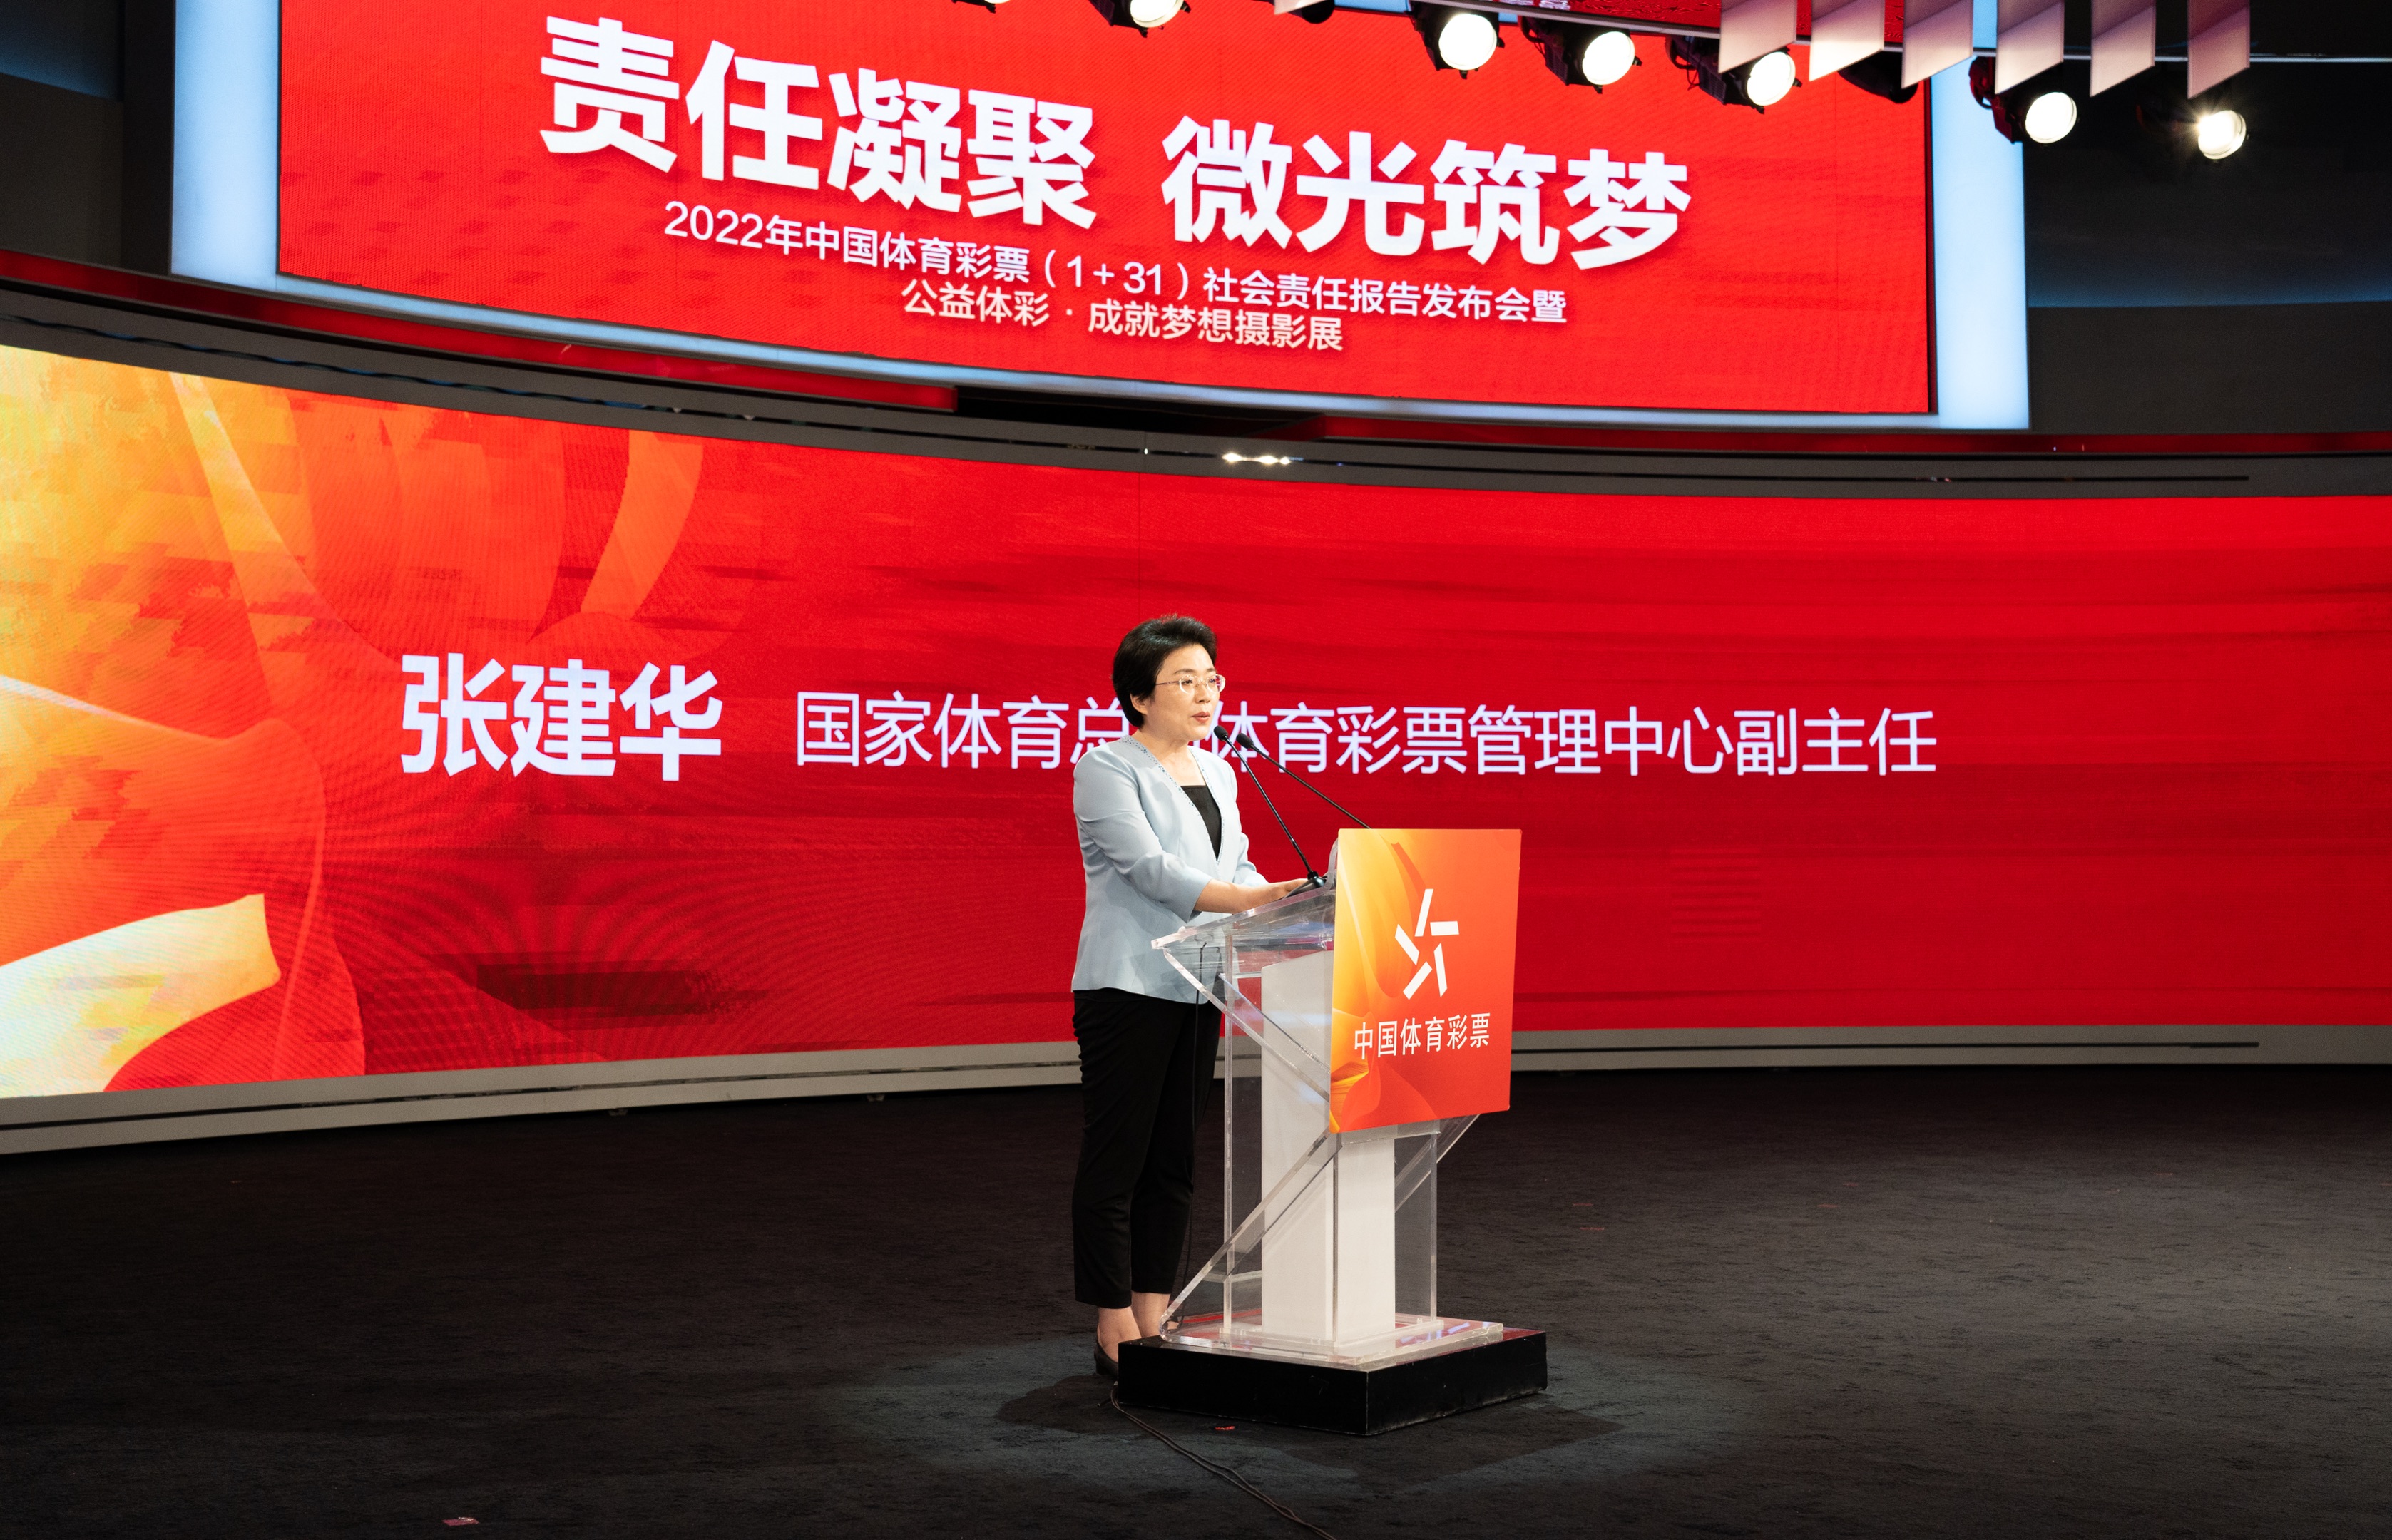 责任凝聚 微光筑梦  2022年中国体育彩票（1＋31）社会责任报告发布会在京举行